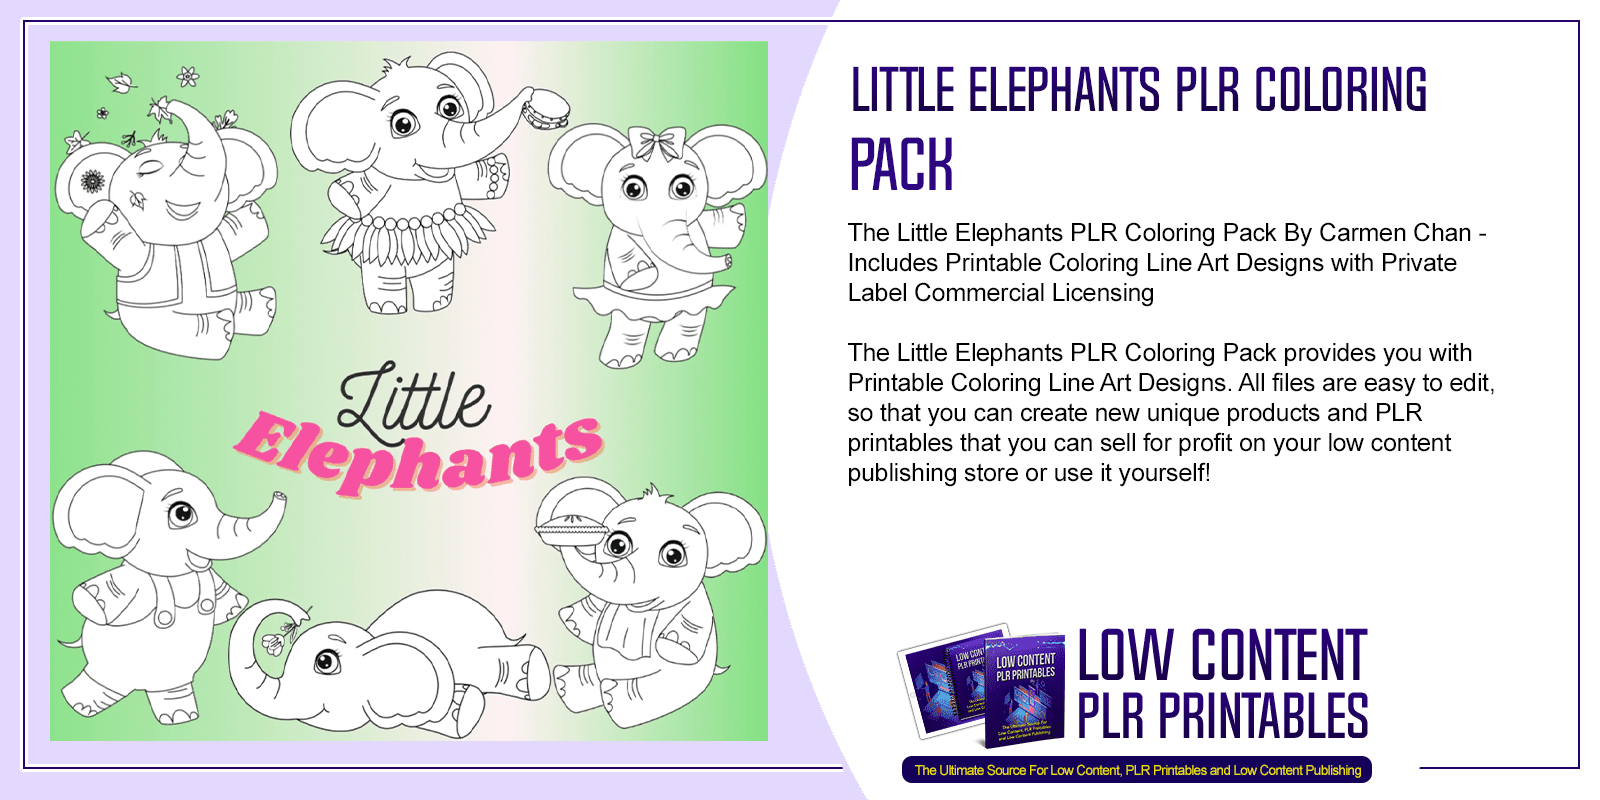 Little Elephants PLR Coloring Pack